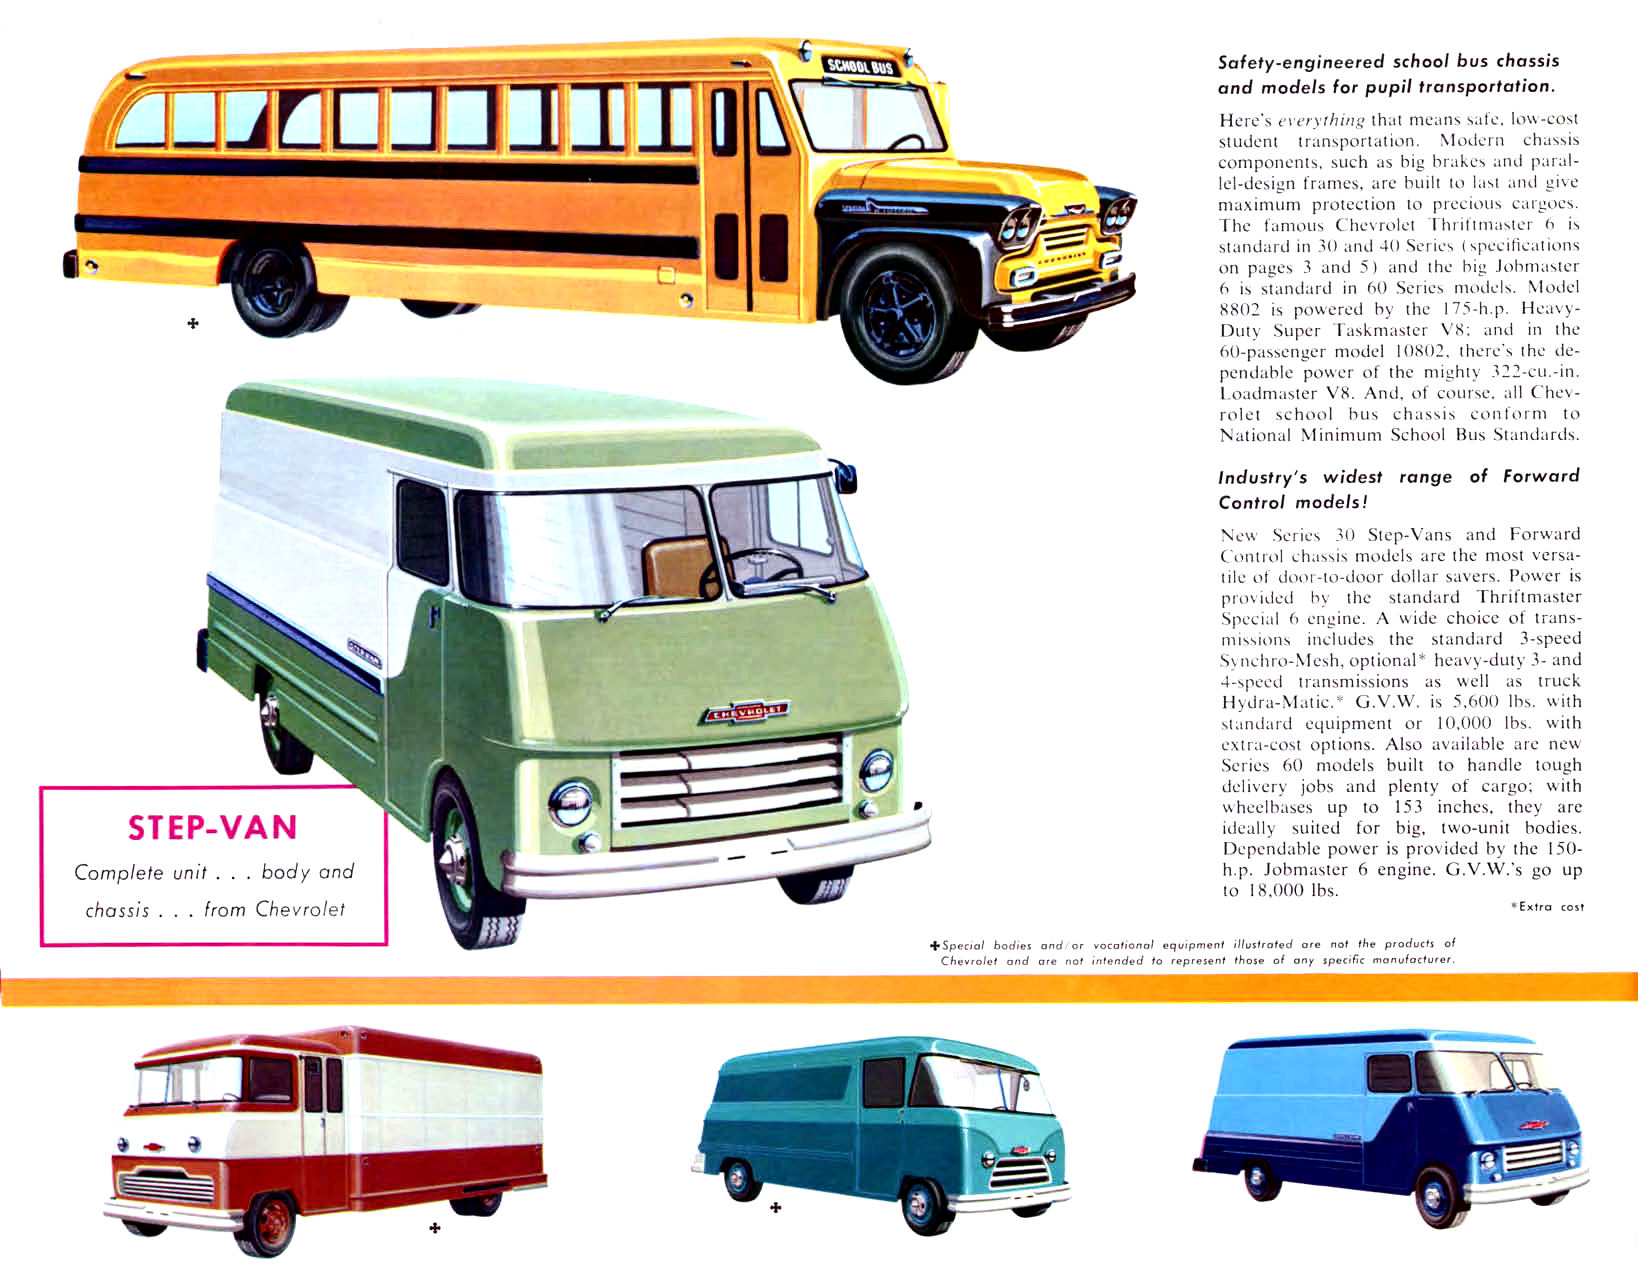 1958_Chevrolet_Truck_Full_Line-08